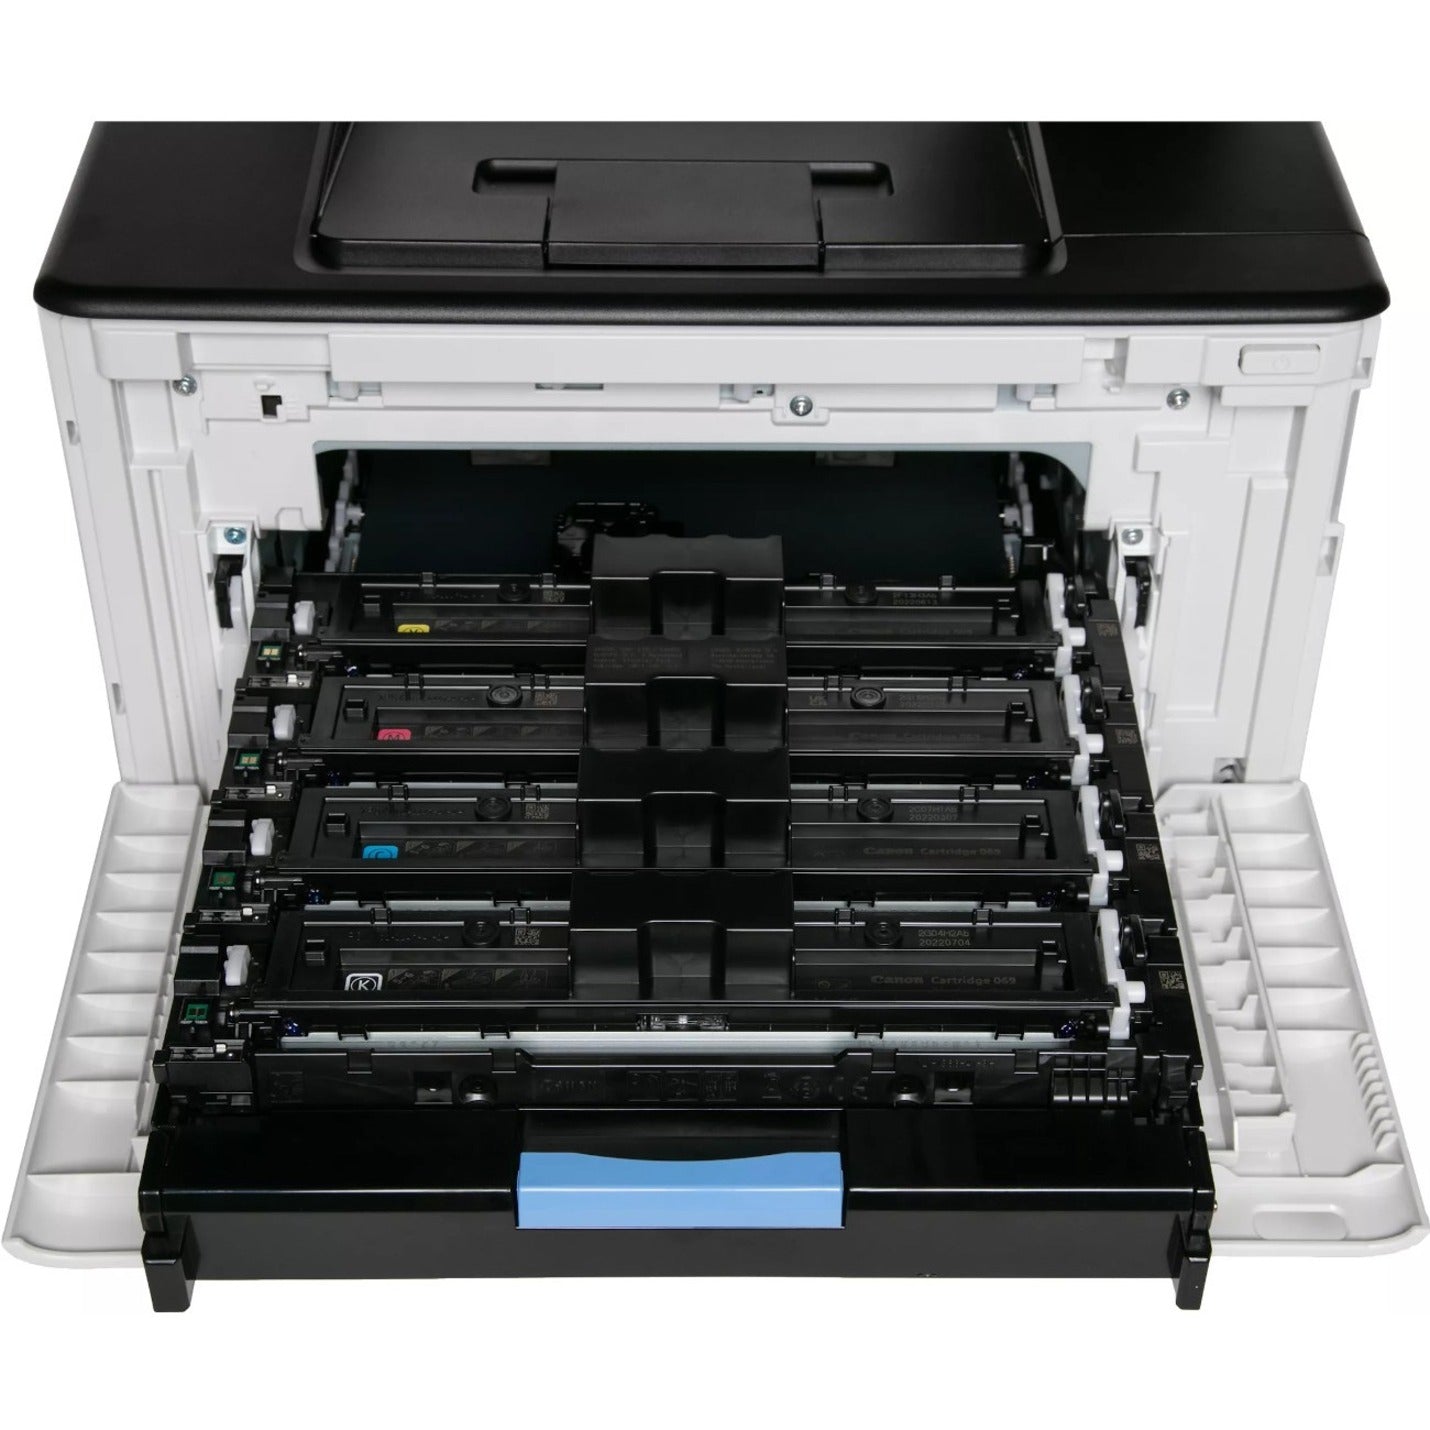 キヤノン 5456C006 imageCLASS LBP674Cdw レーザープリンター、ワイヤレスカラー印刷、3年保証、推奨月間印刷枚数750～4000